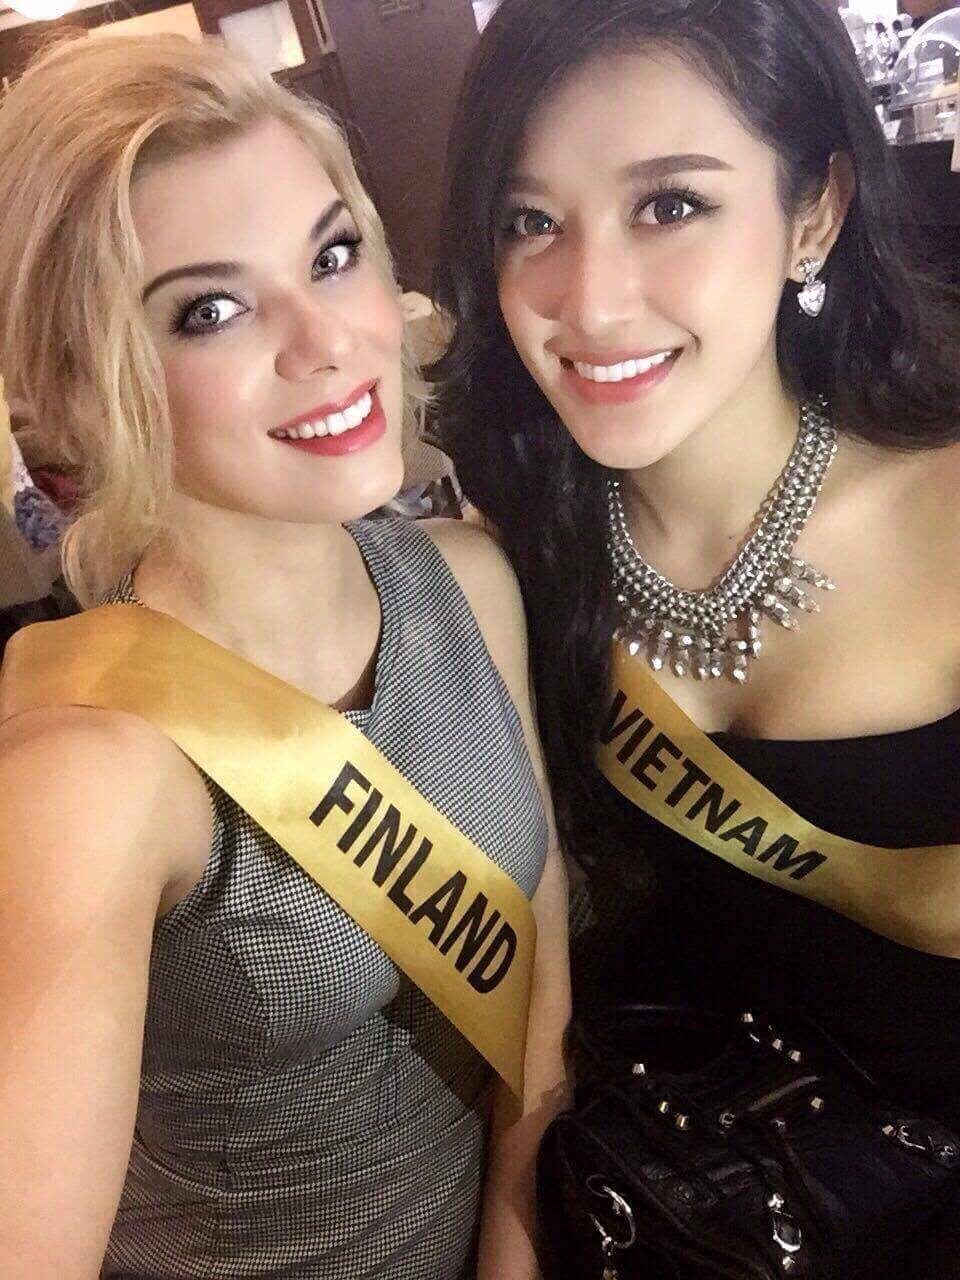 Nhanh chóng lấy lại phong độ, Huyền My quay trở lại top 10 bình chọn của Miss Grand International 2017 - Ảnh 2.